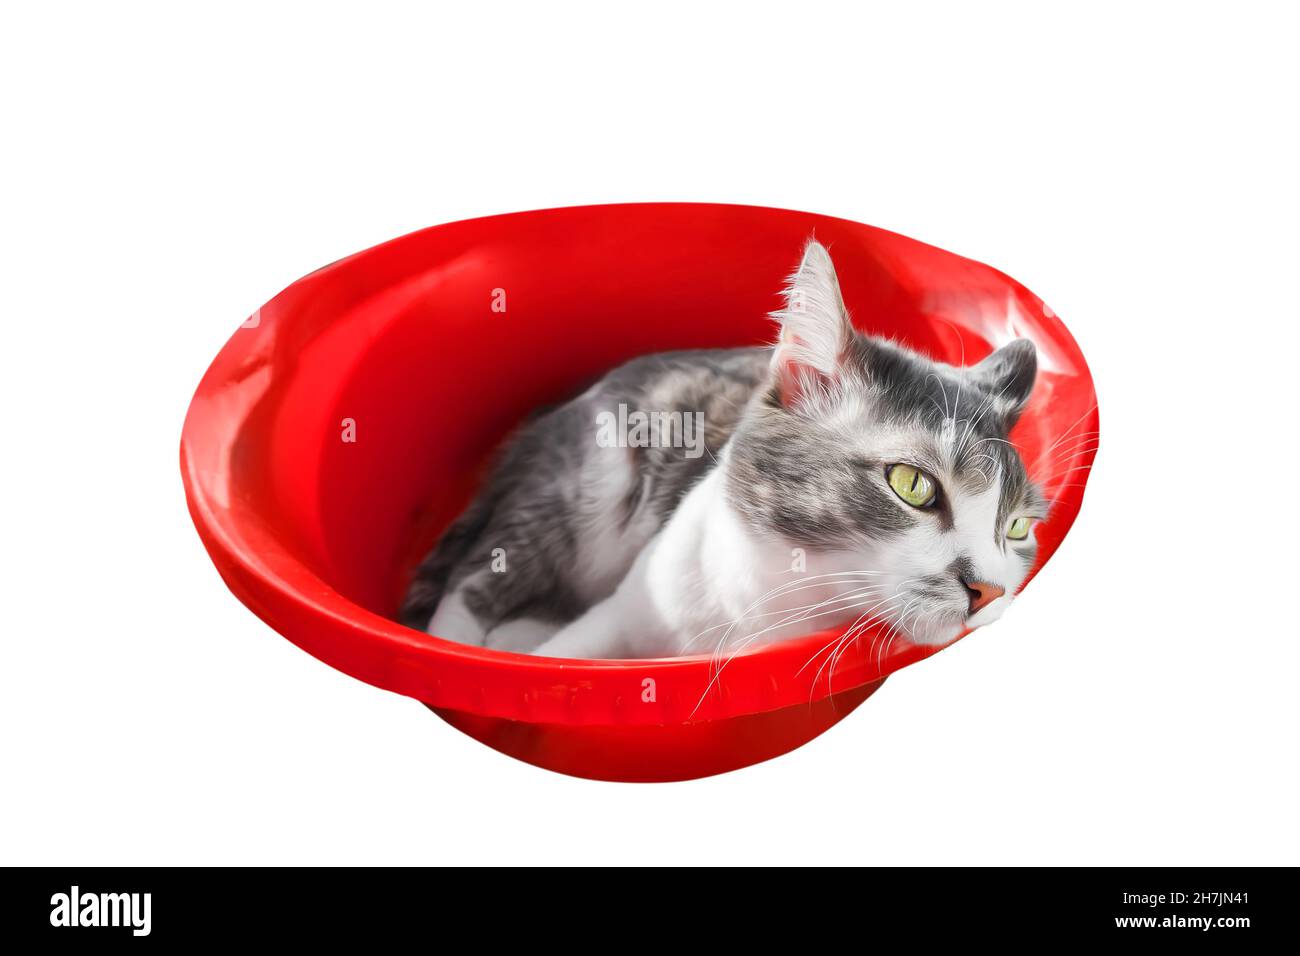 Traurige Katze liegt im leeren roten Becken und schaut weg. Isoliertes Tier auf weißem Hintergrund. Depression und Sehnsucht nach Haustier. Konzept. Stockfoto